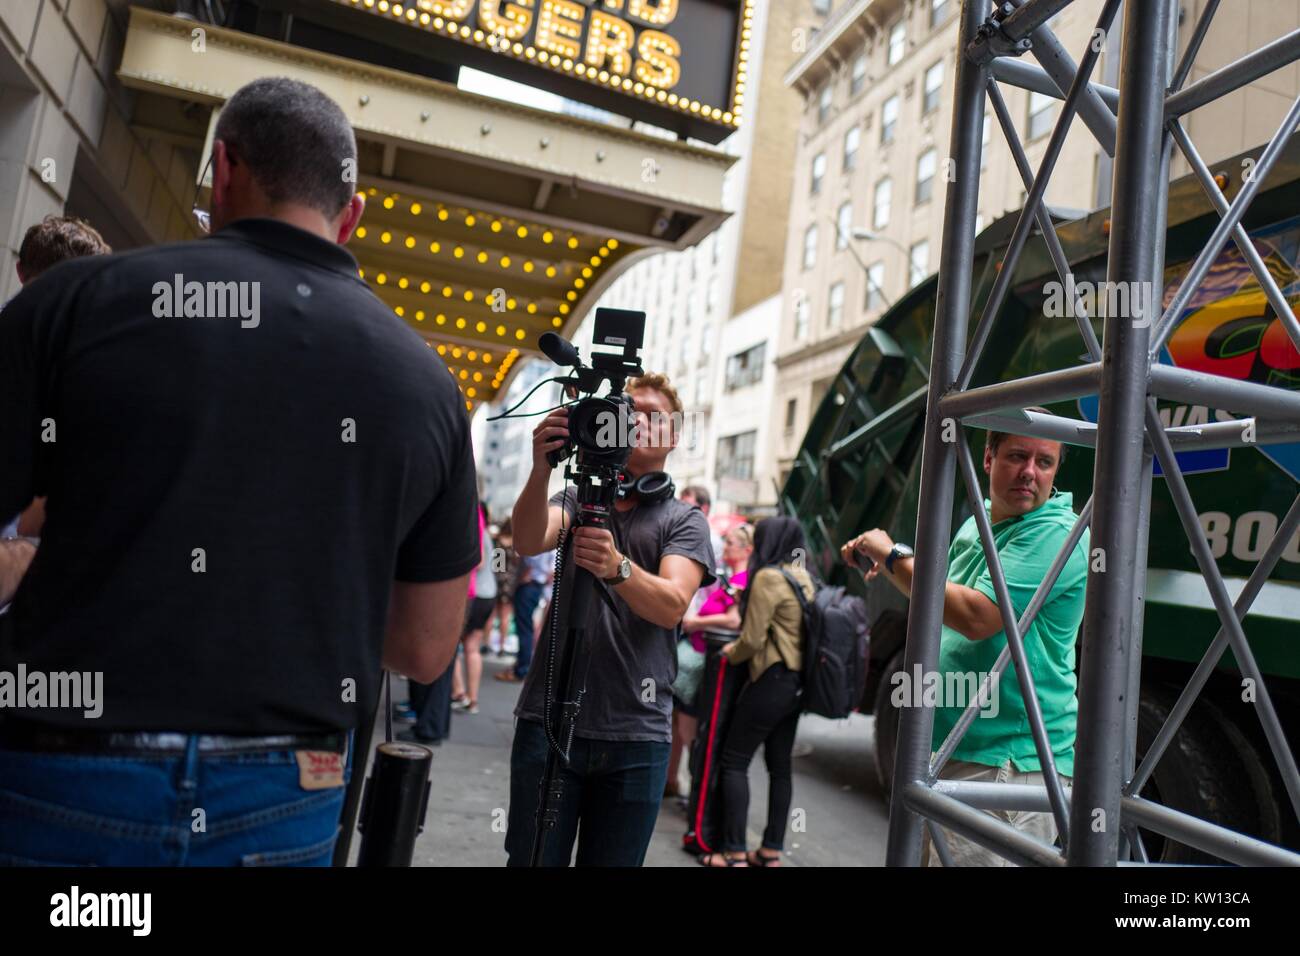 Prima di una performance del musical di Broadway Hamilton due giorni prima del creatore Lin Manuel Miranda la partenza dalla mostra, il cameraman per una televisione news equipaggio prende le riprese della folla, New York New York, 7 luglio 2016. Foto Stock